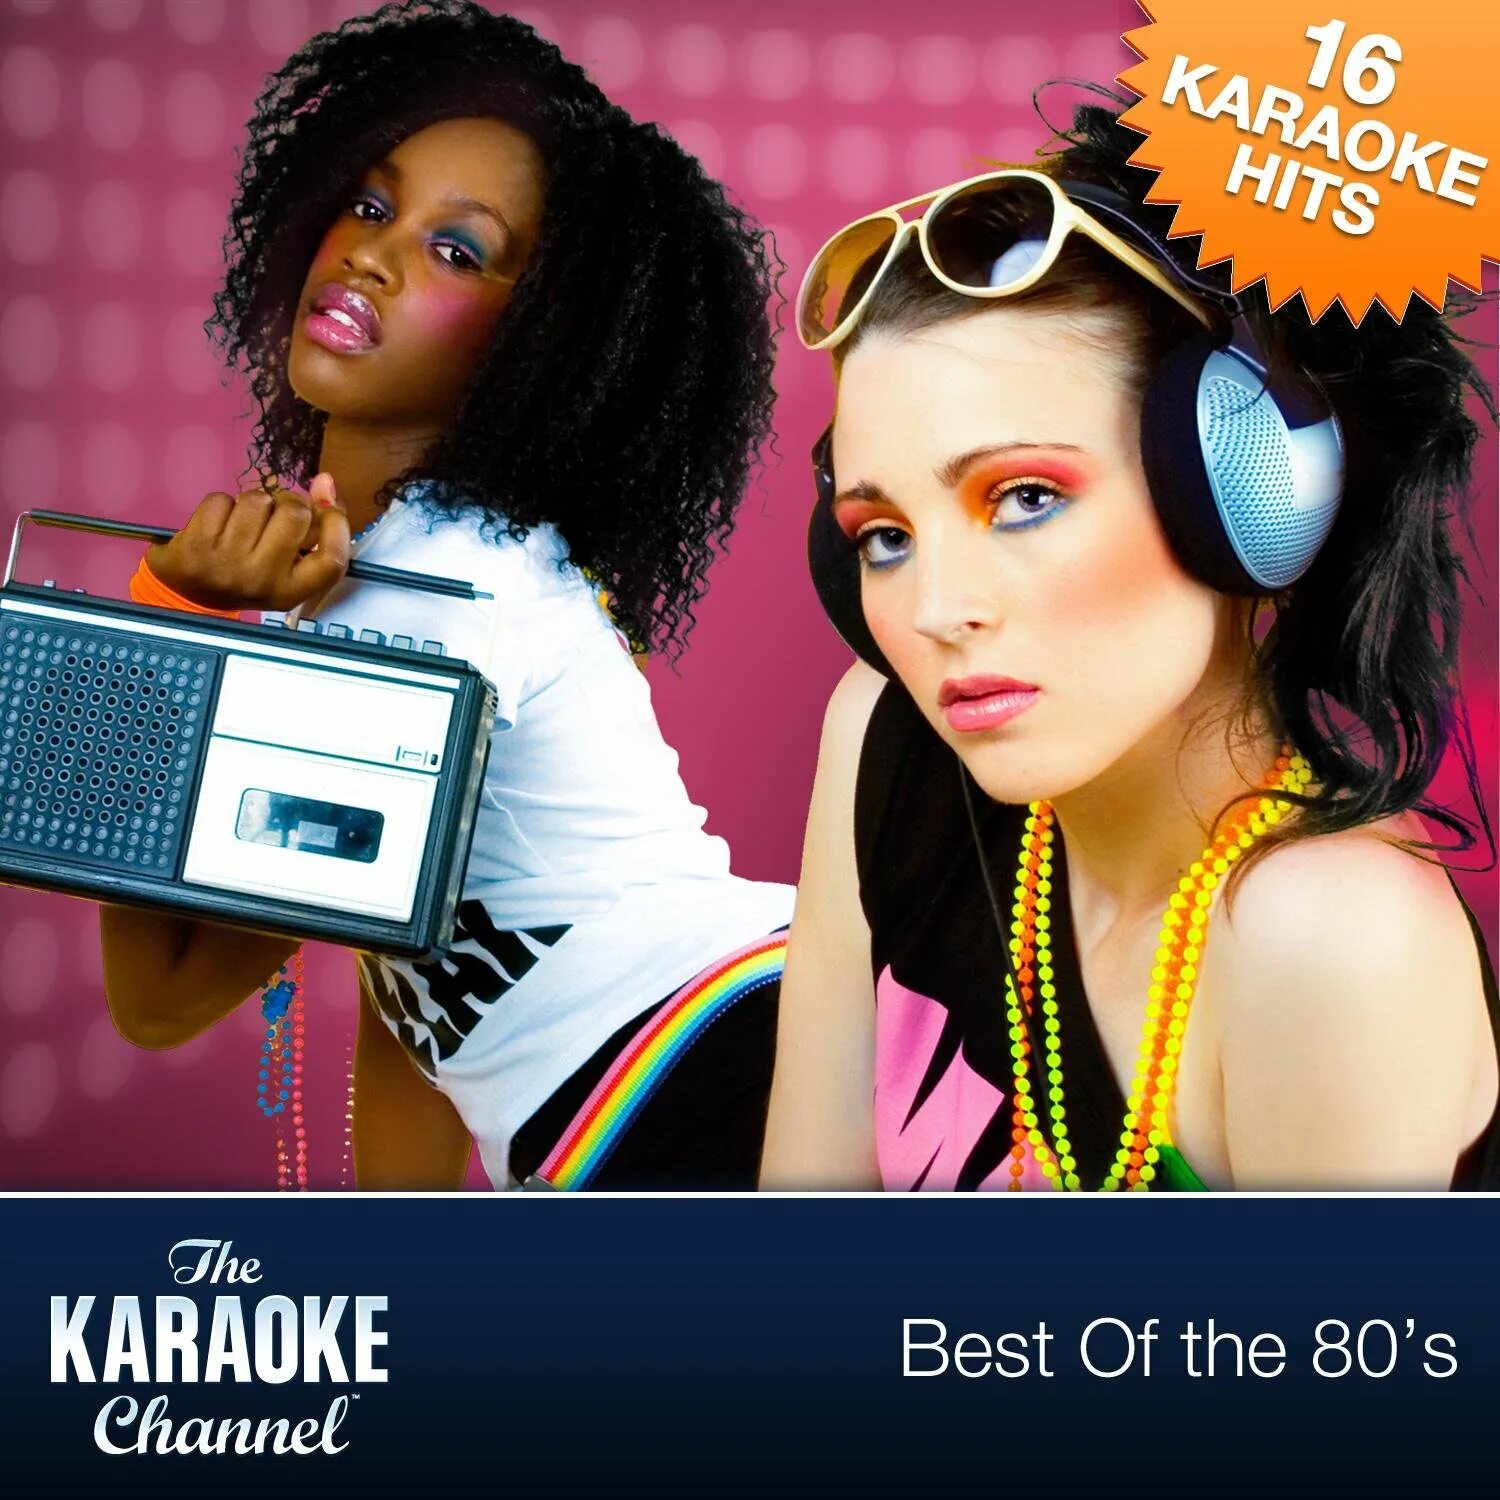 Песня хит недели. Best 80s. 80s Songs. Karaoke channel. Хиты 80s.